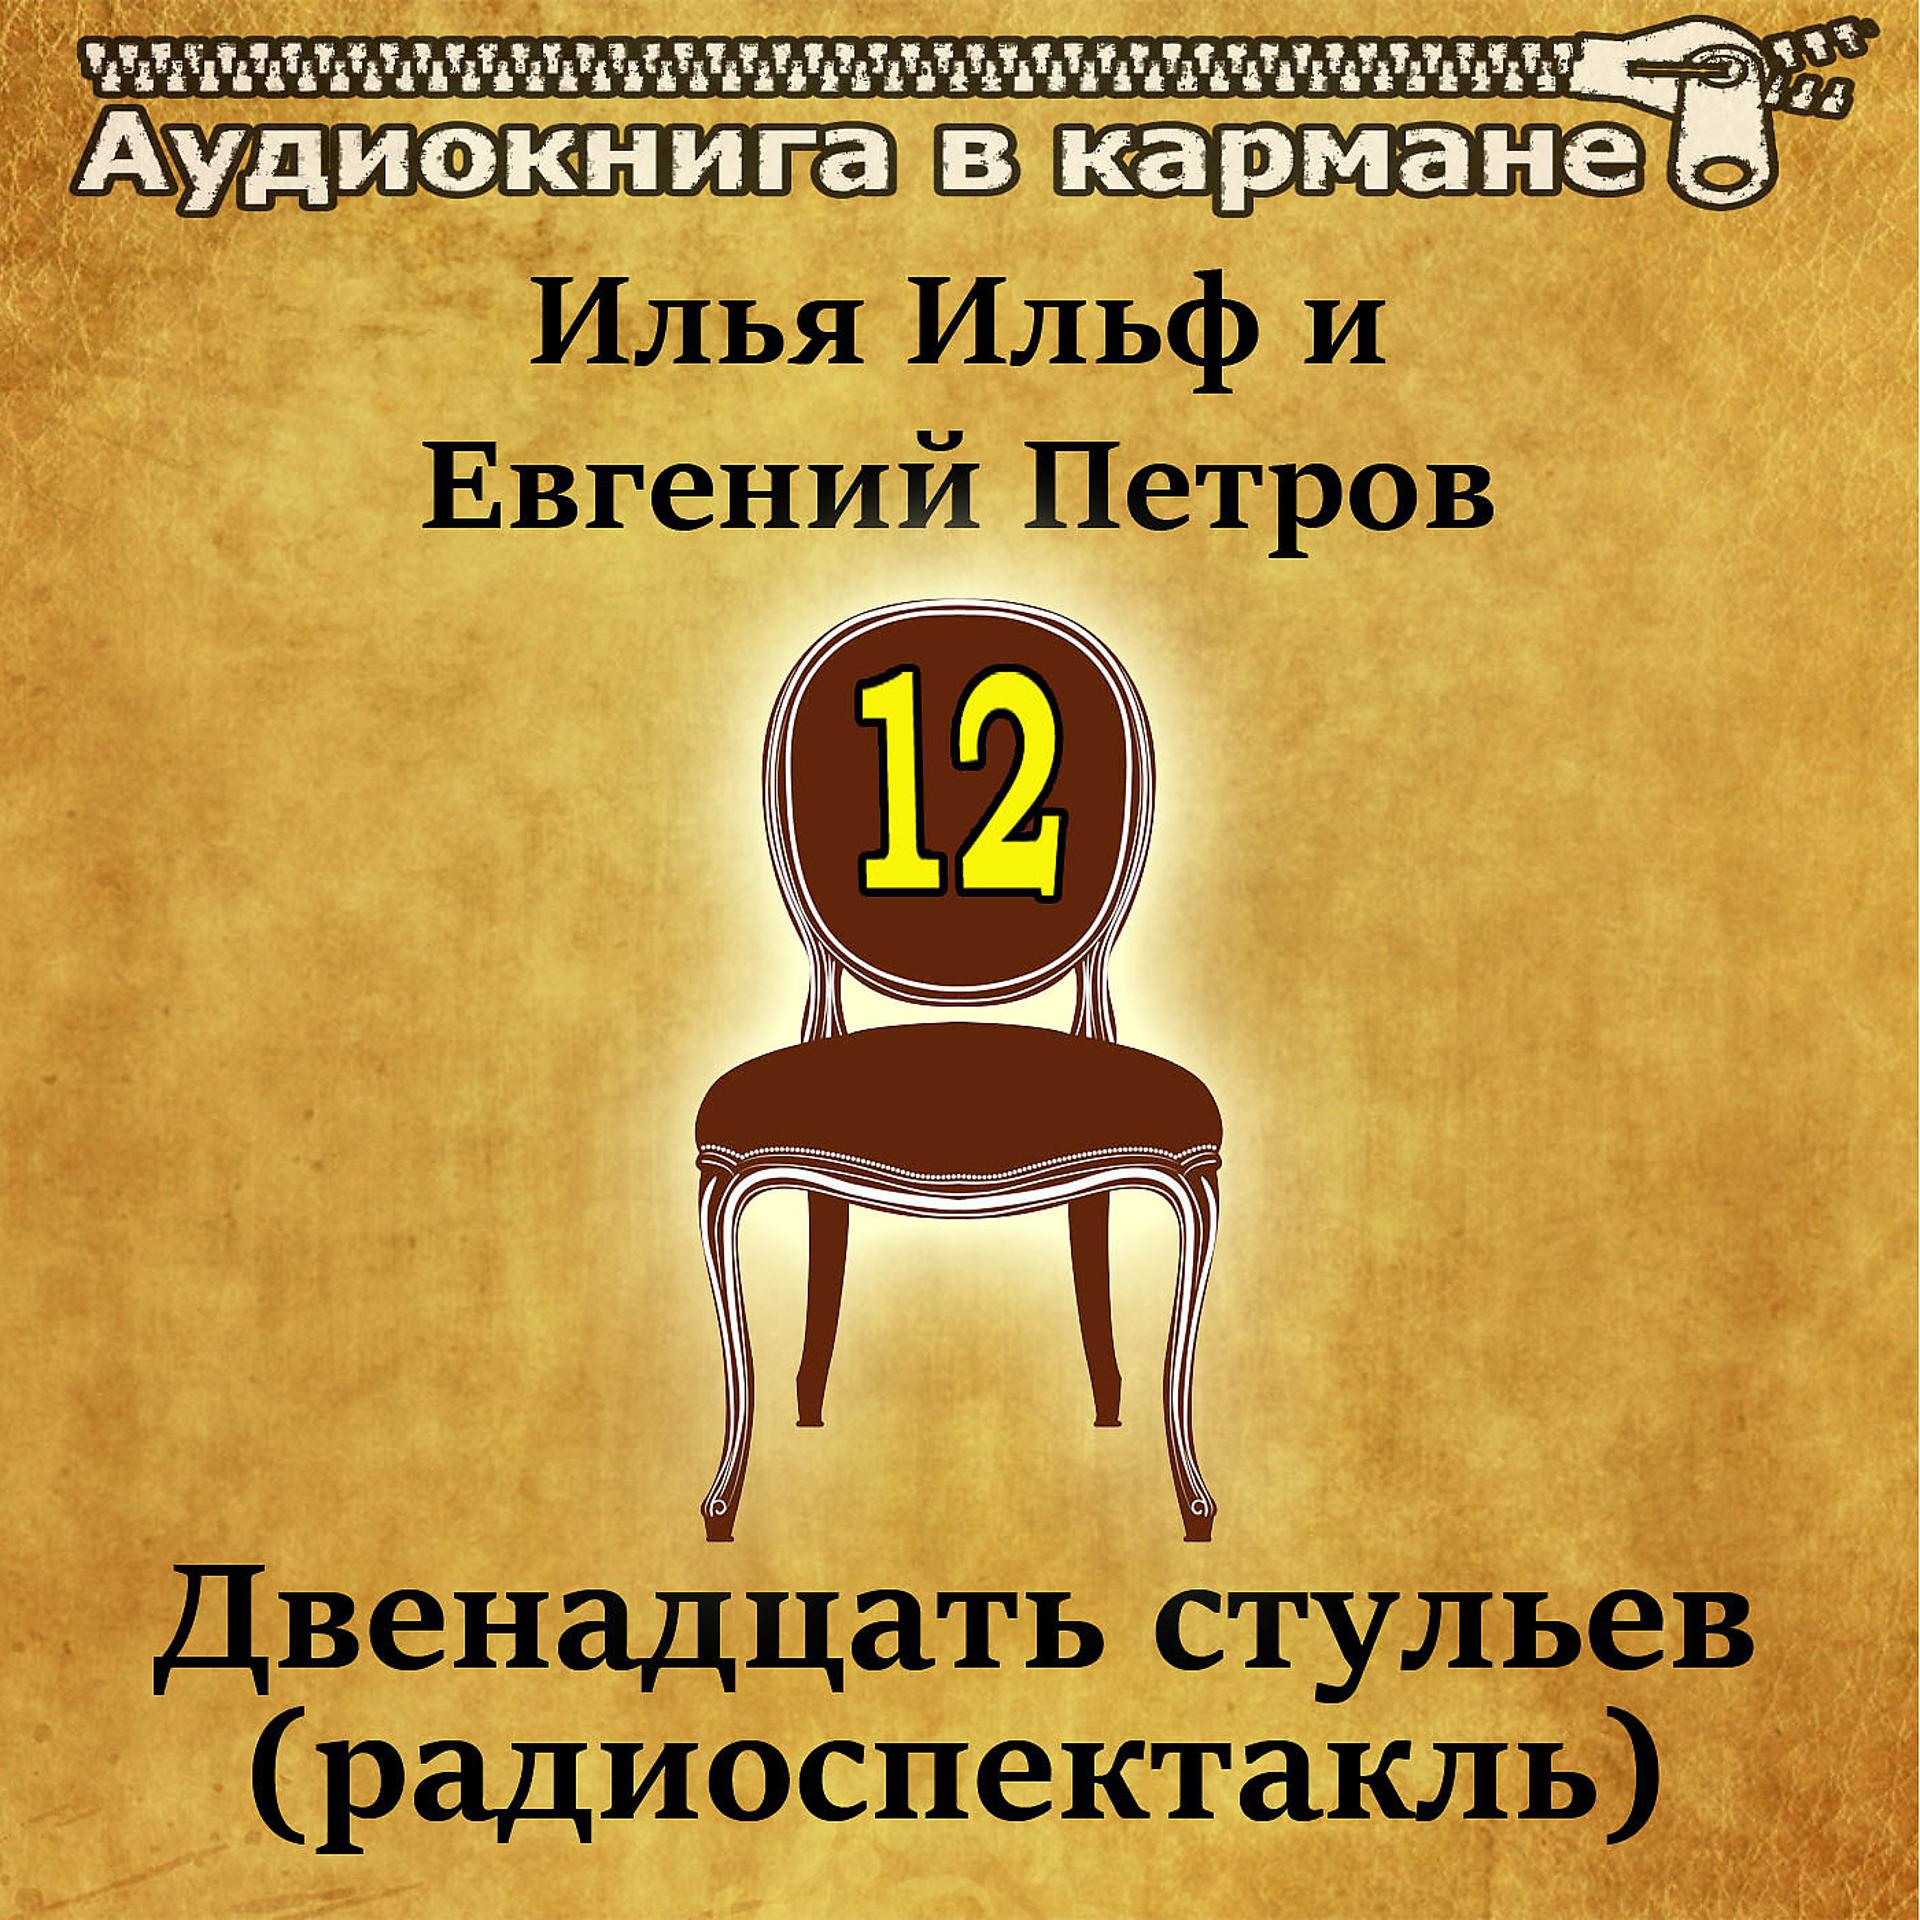 Постер к треку Аудиокнига в кармане, Евгений Весник - Двенадцать стульев, Чт. 1